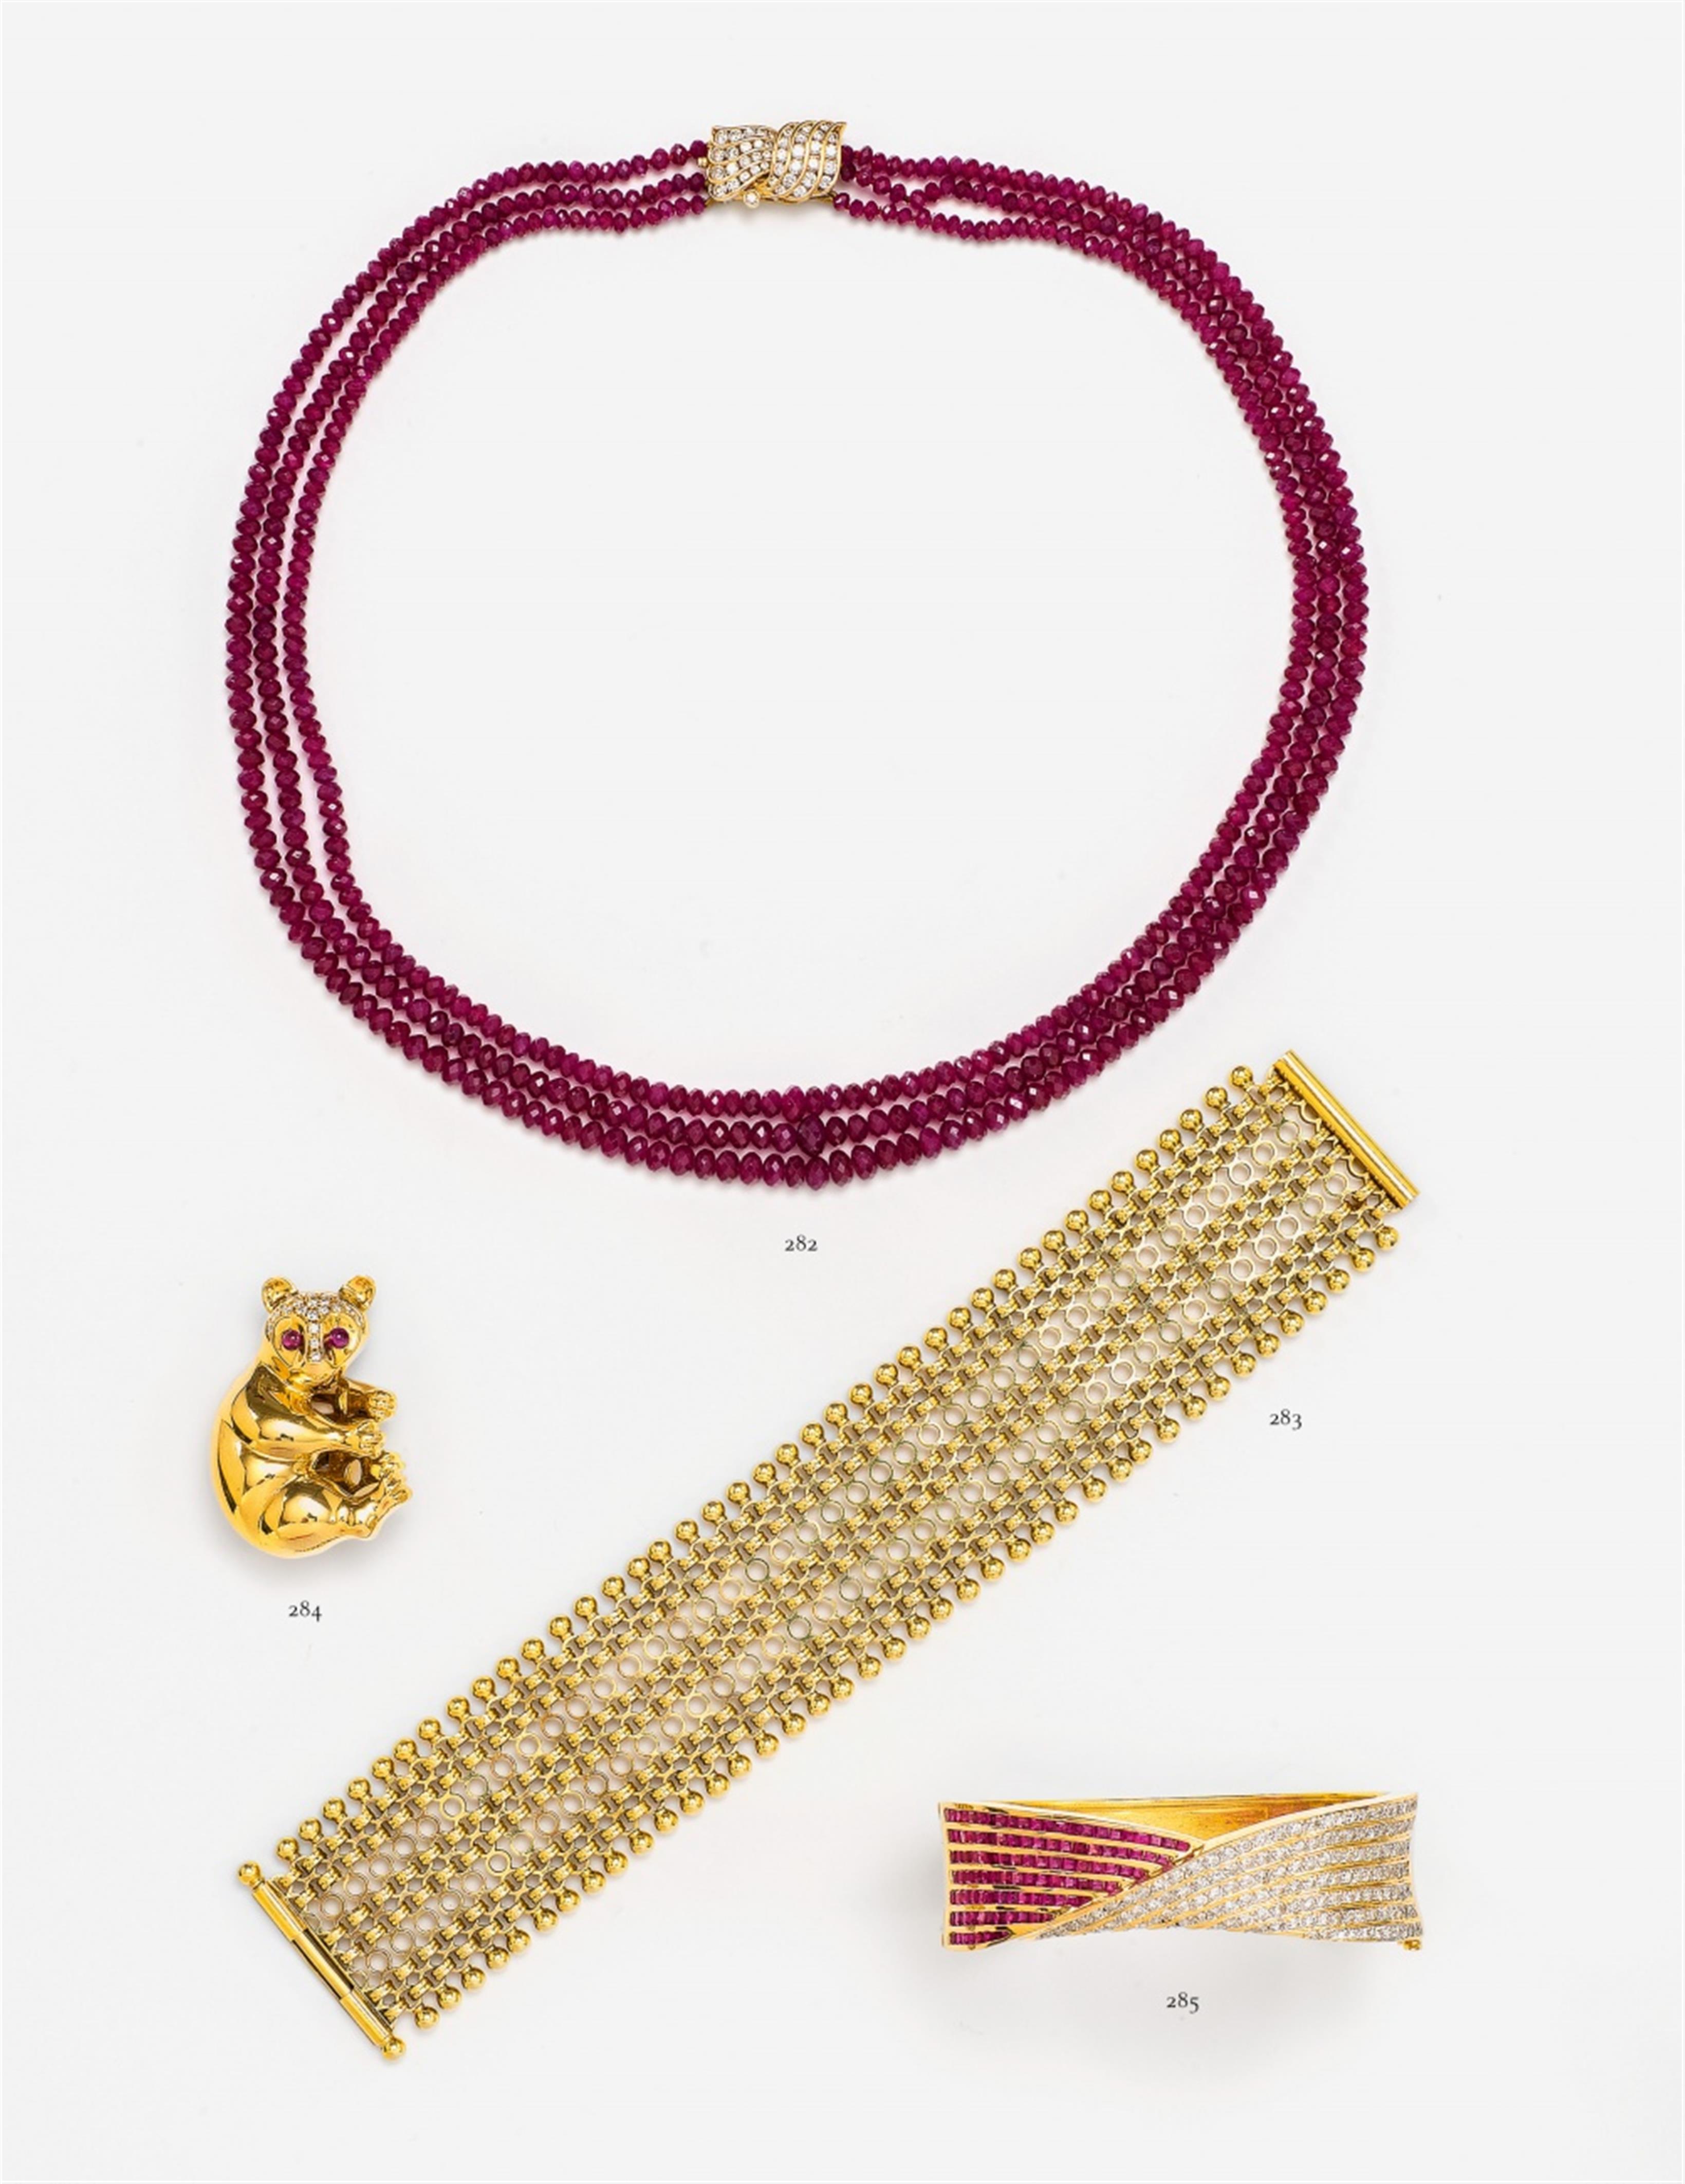 A 14k gold bracelet - image-1